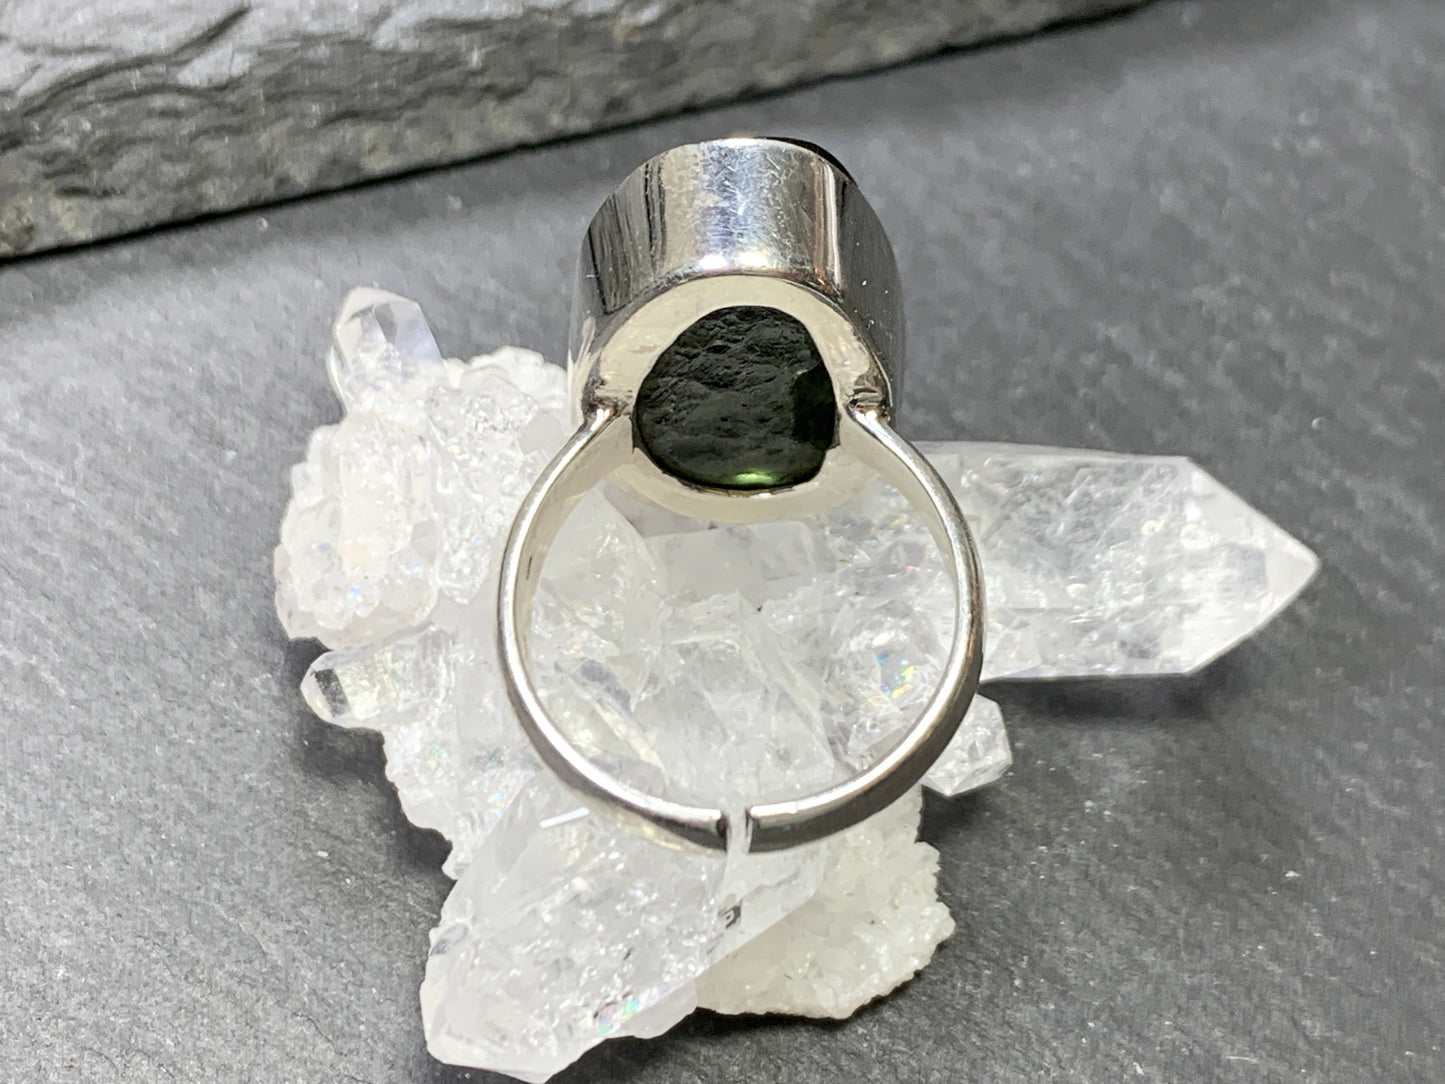 Polished moldavite ring/ size 6.0 US